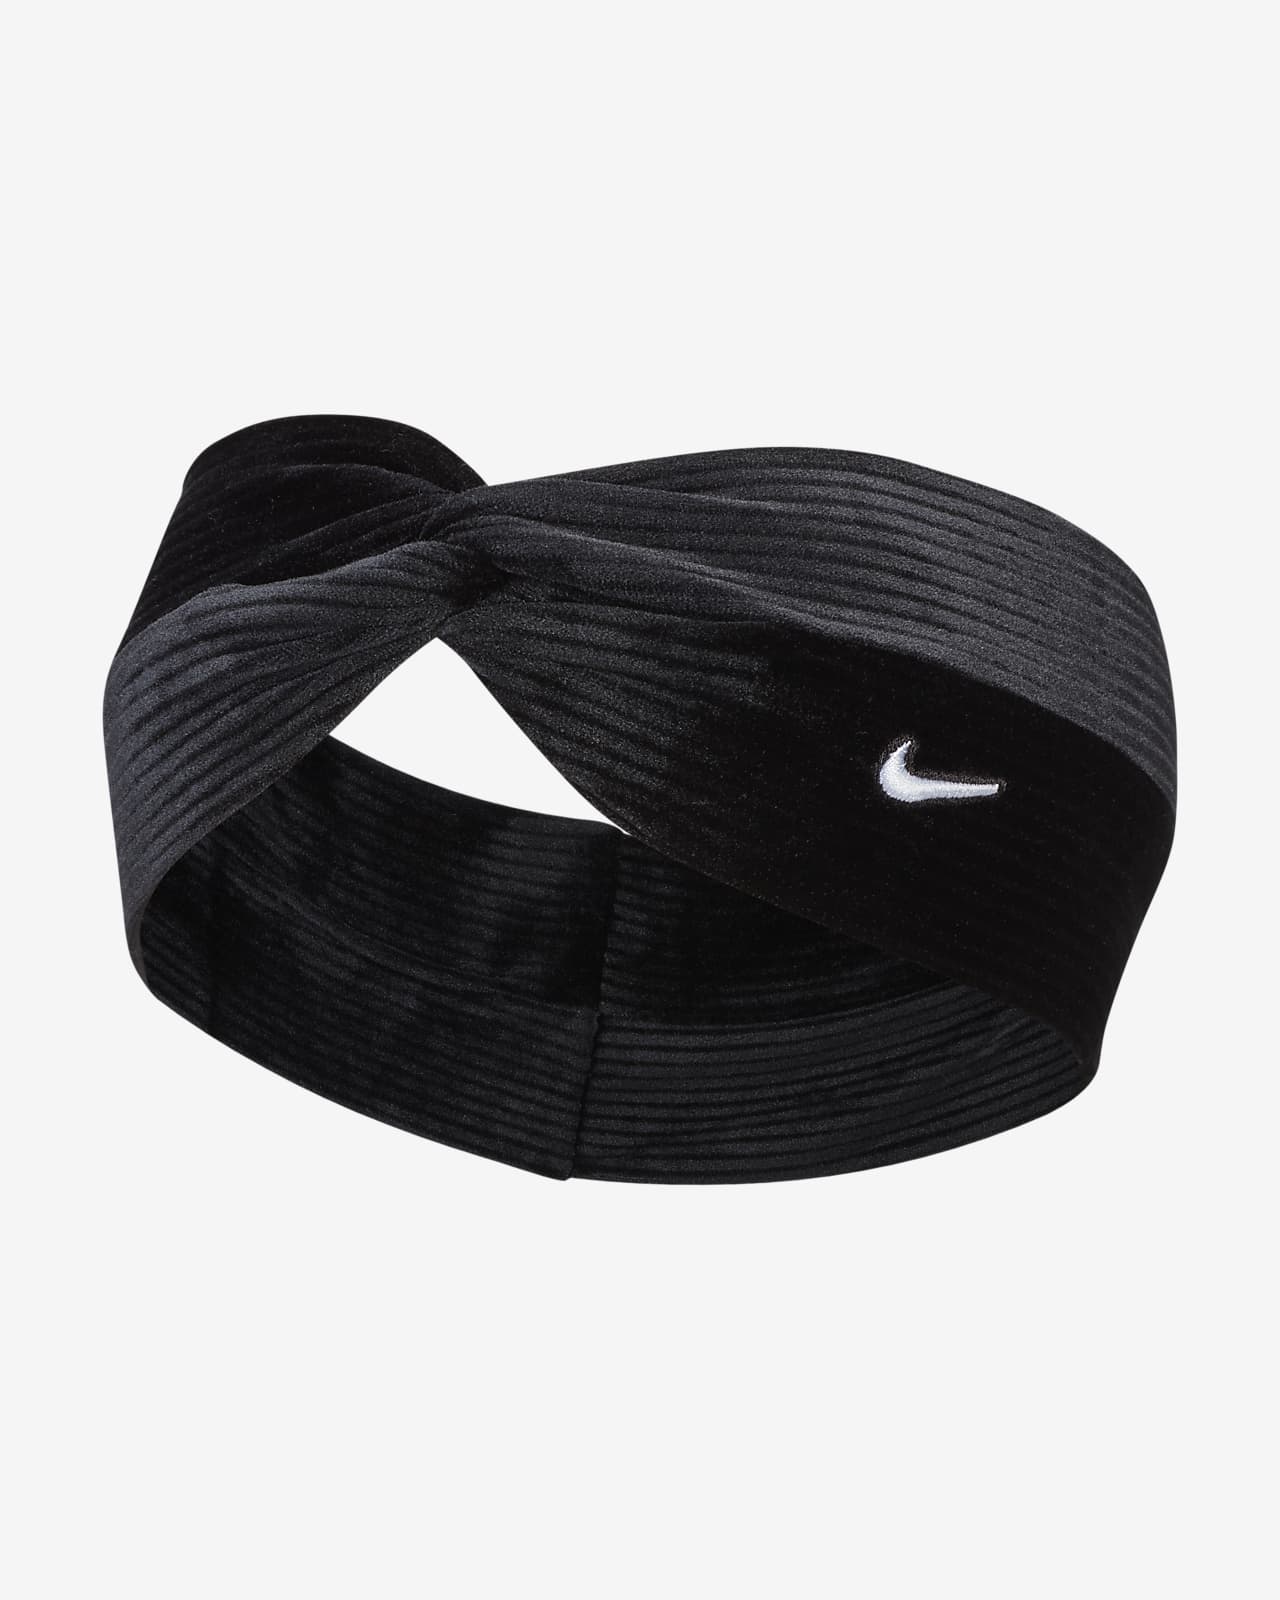 altura Digno Hay una tendencia Banda para el cabello con nudo retorcido Nike. Nike.com